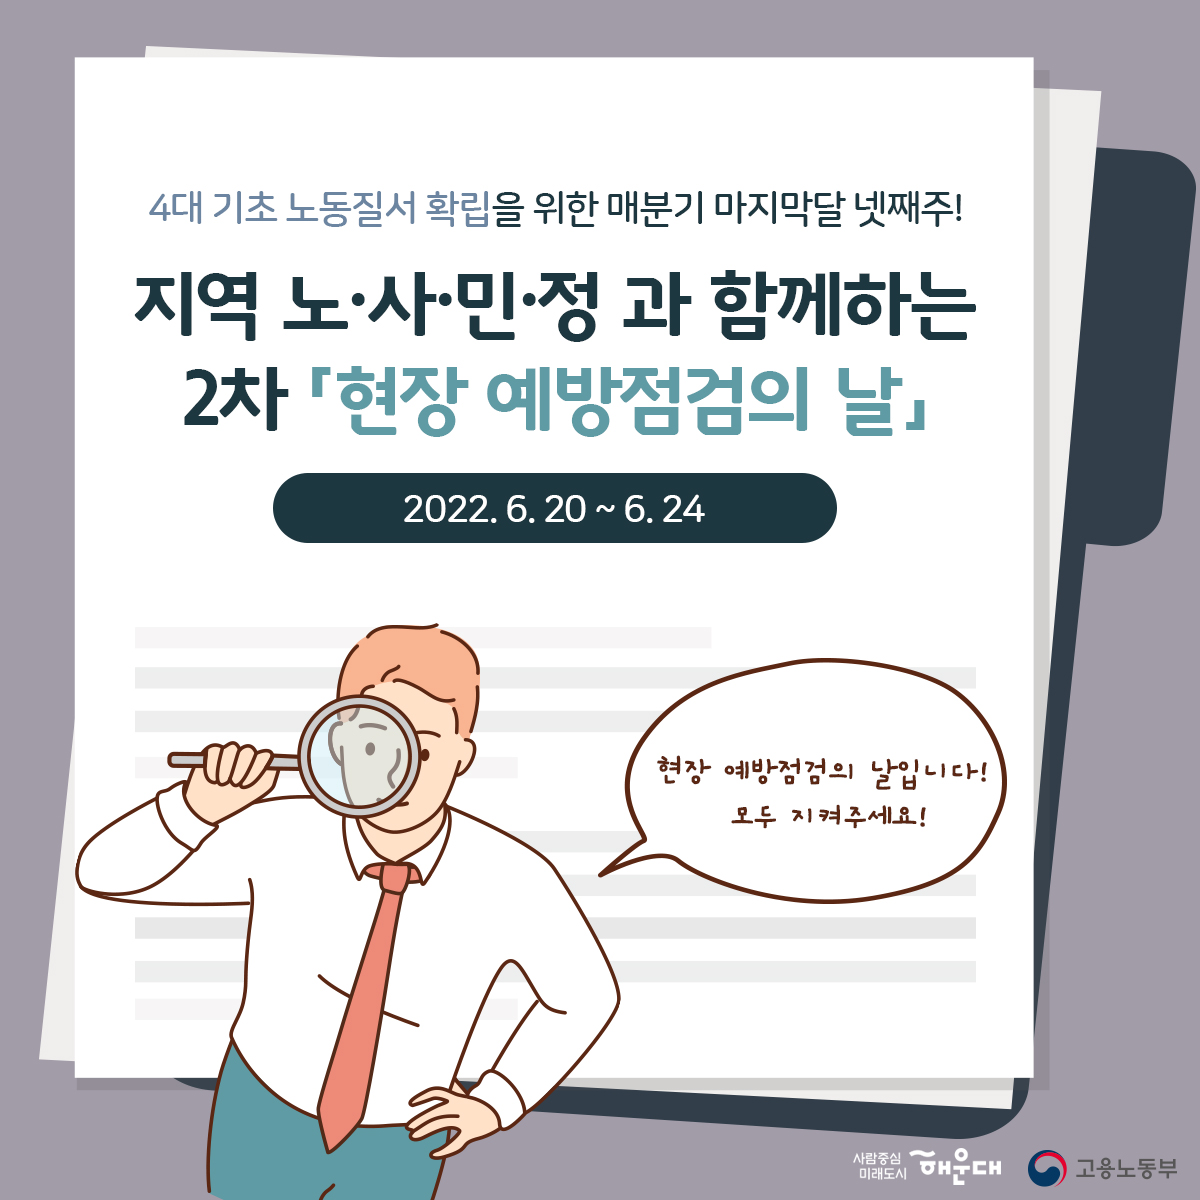 지역 노/사/민/정 과 함께하는 2차 현장예방점검의 날